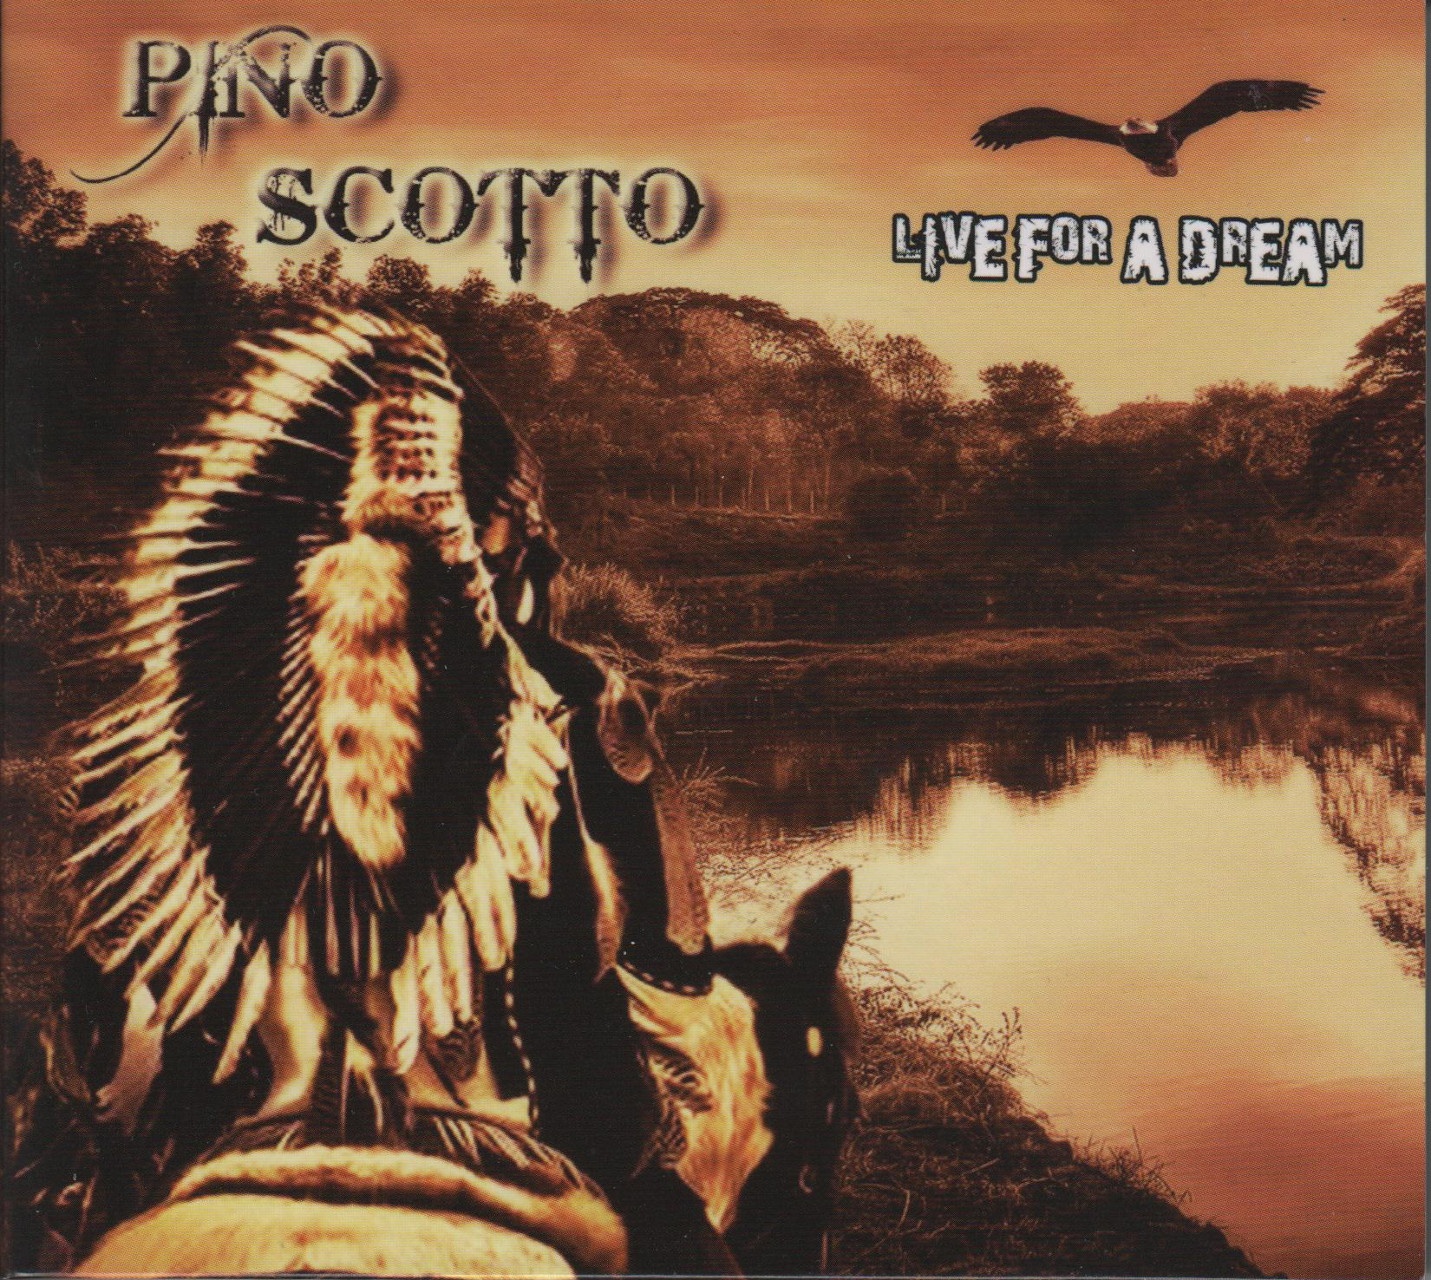 Recensione Pino Scotto - Live for a dream